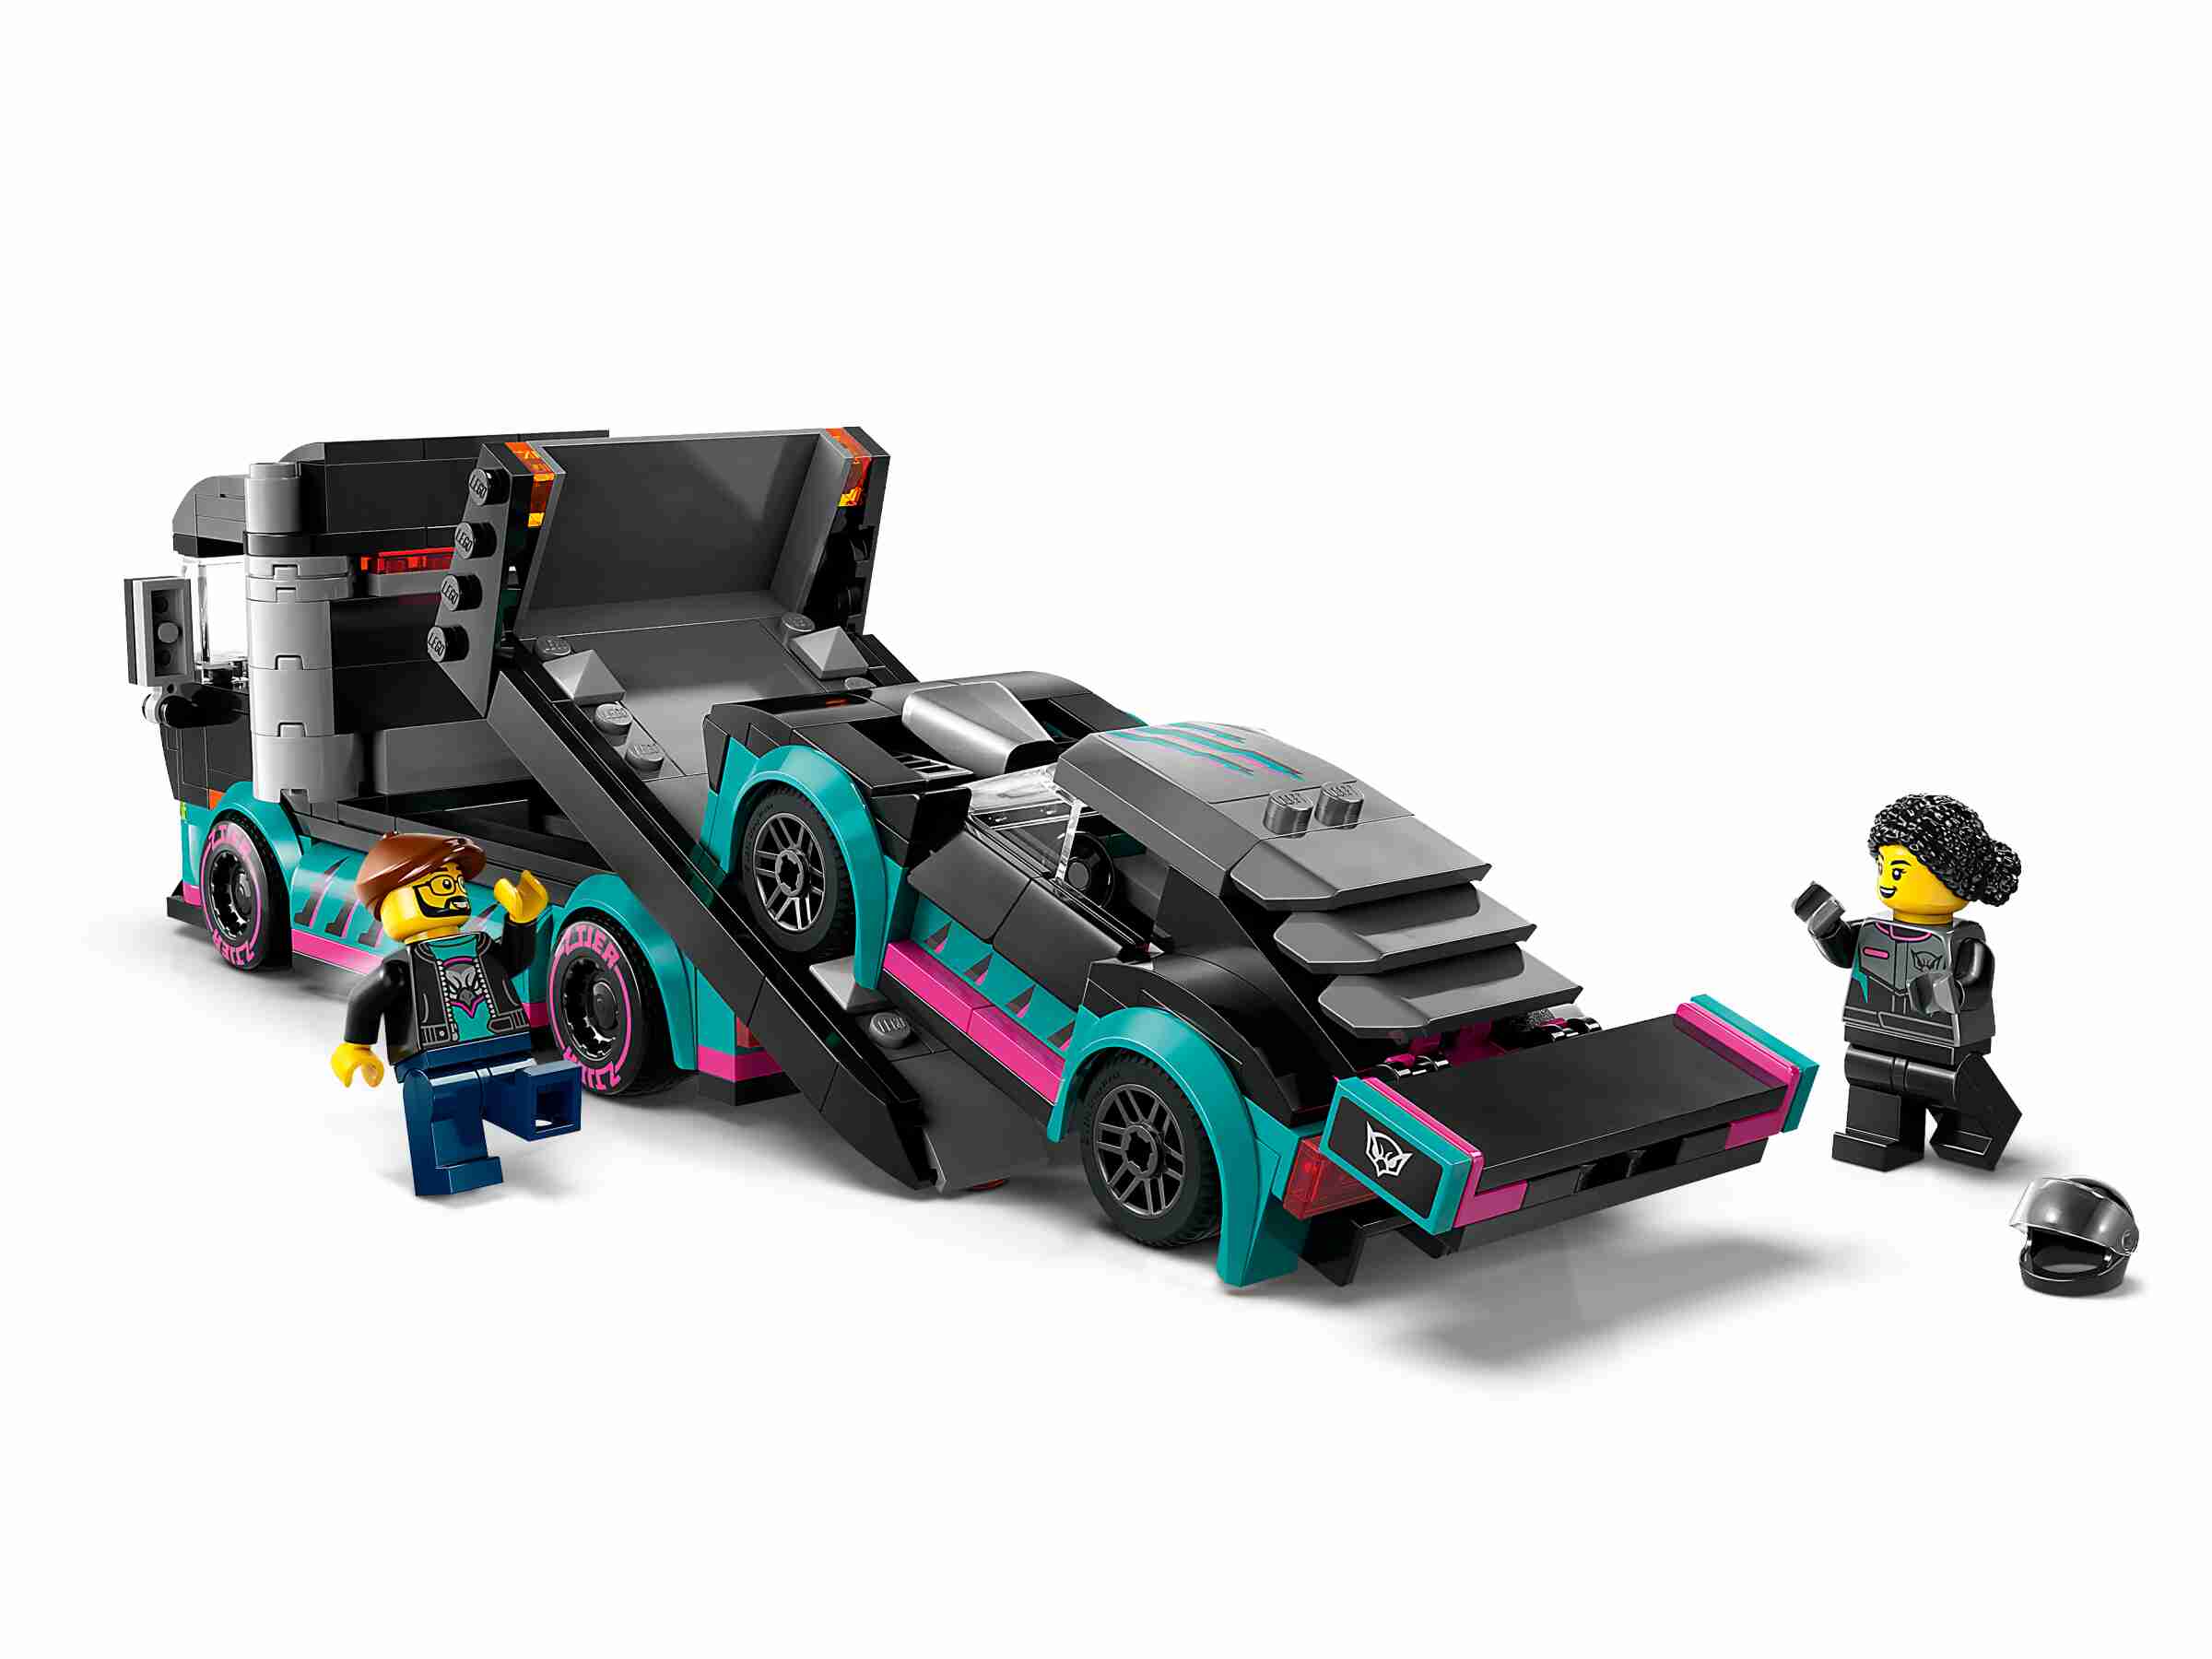 LEGO 60406 City Autotransporter mit Rennwagen, 2 Minifiguren, Laderampe